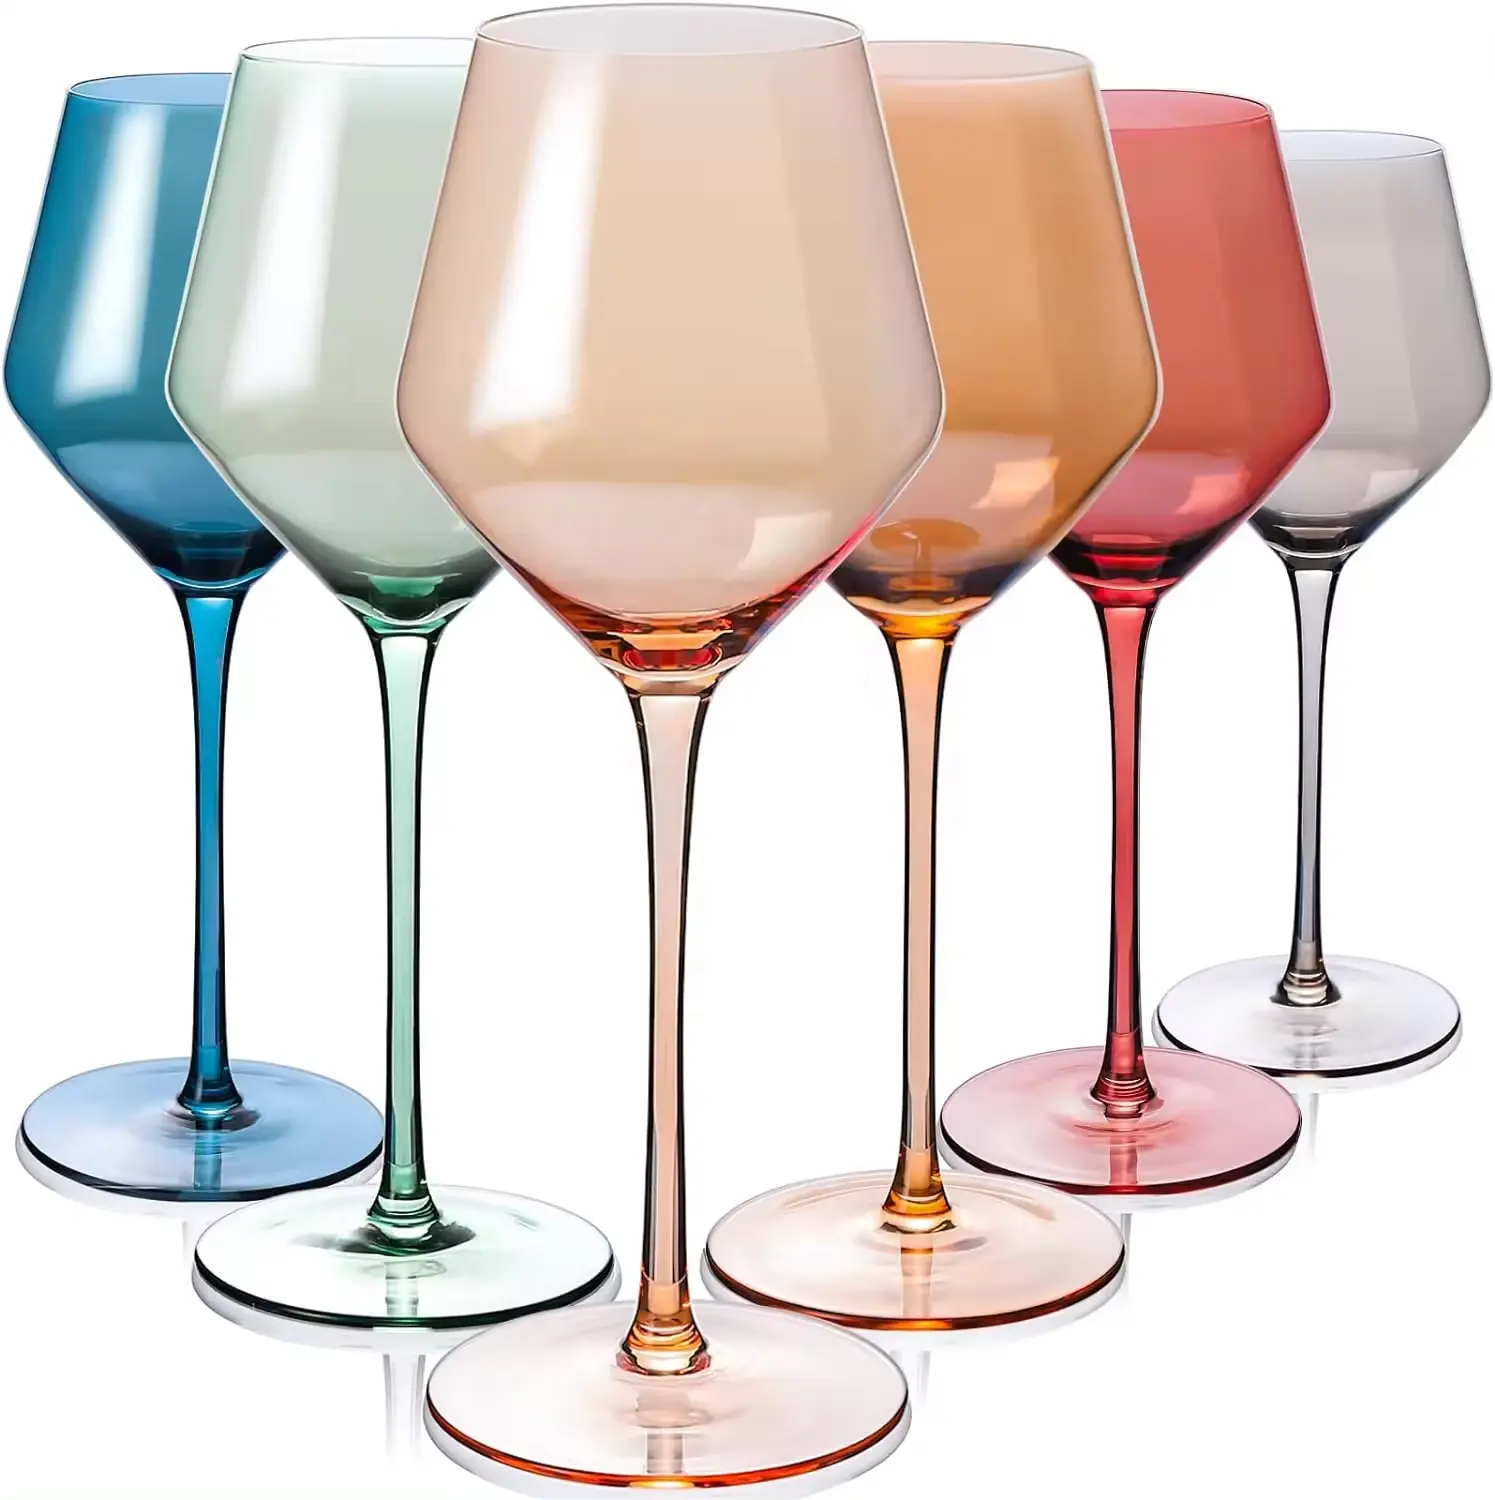 YunHifan16oz Set gelas anggur berwarna, 6 tangkai kaca Multi Warna bagus untuk semua jenis dan kesempatan anggur